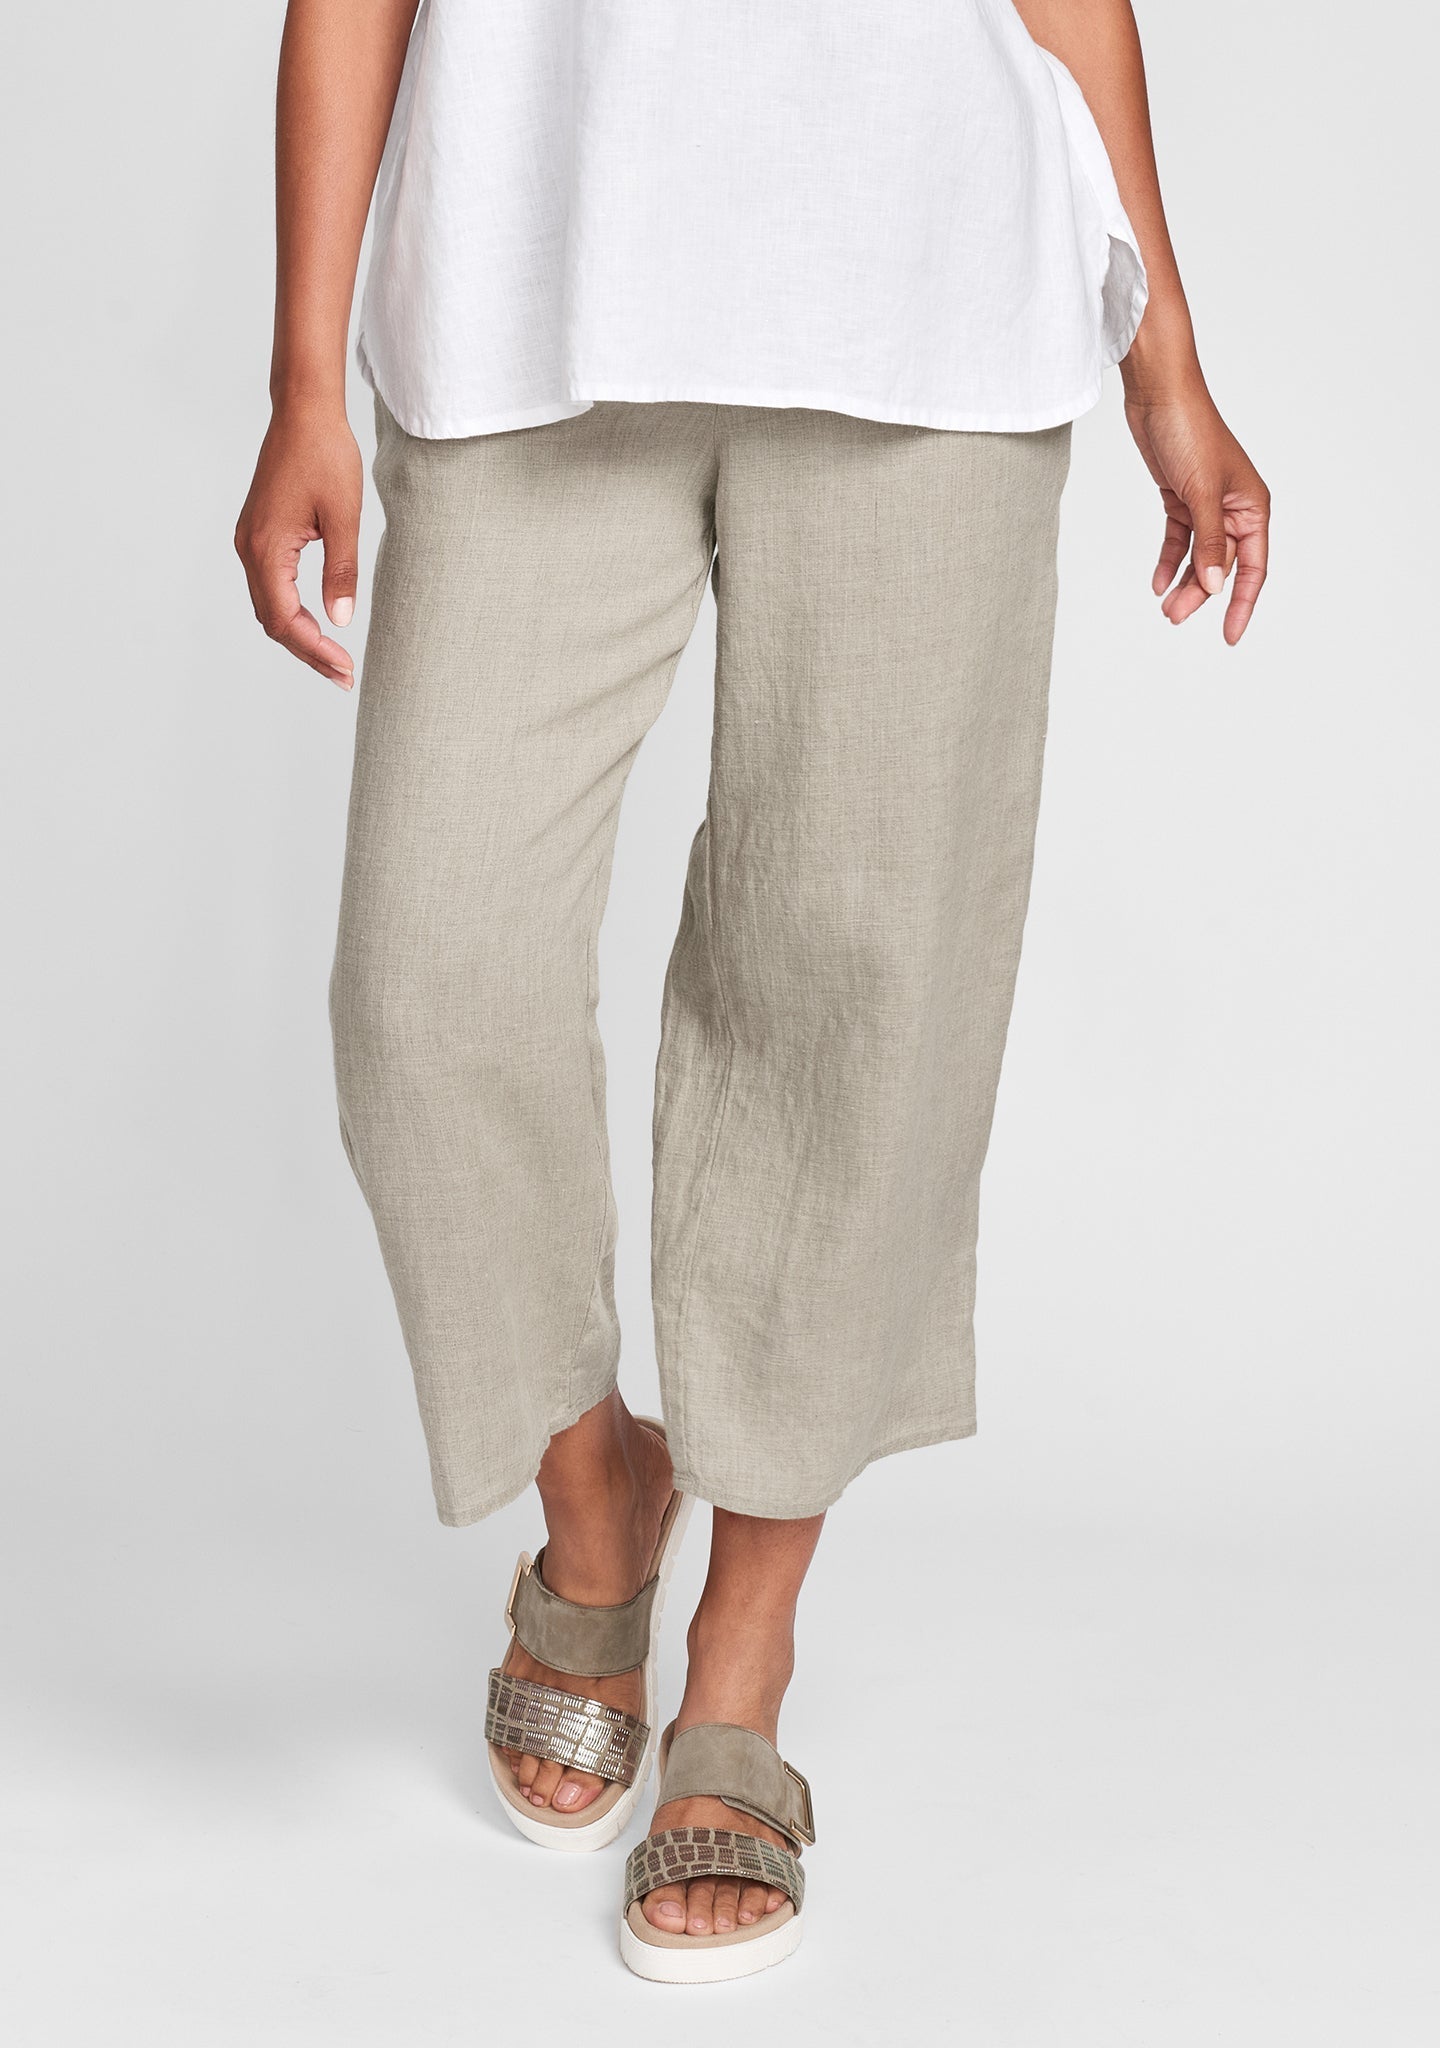 Cotton Linen Pants With Elastic Waist - boddysize